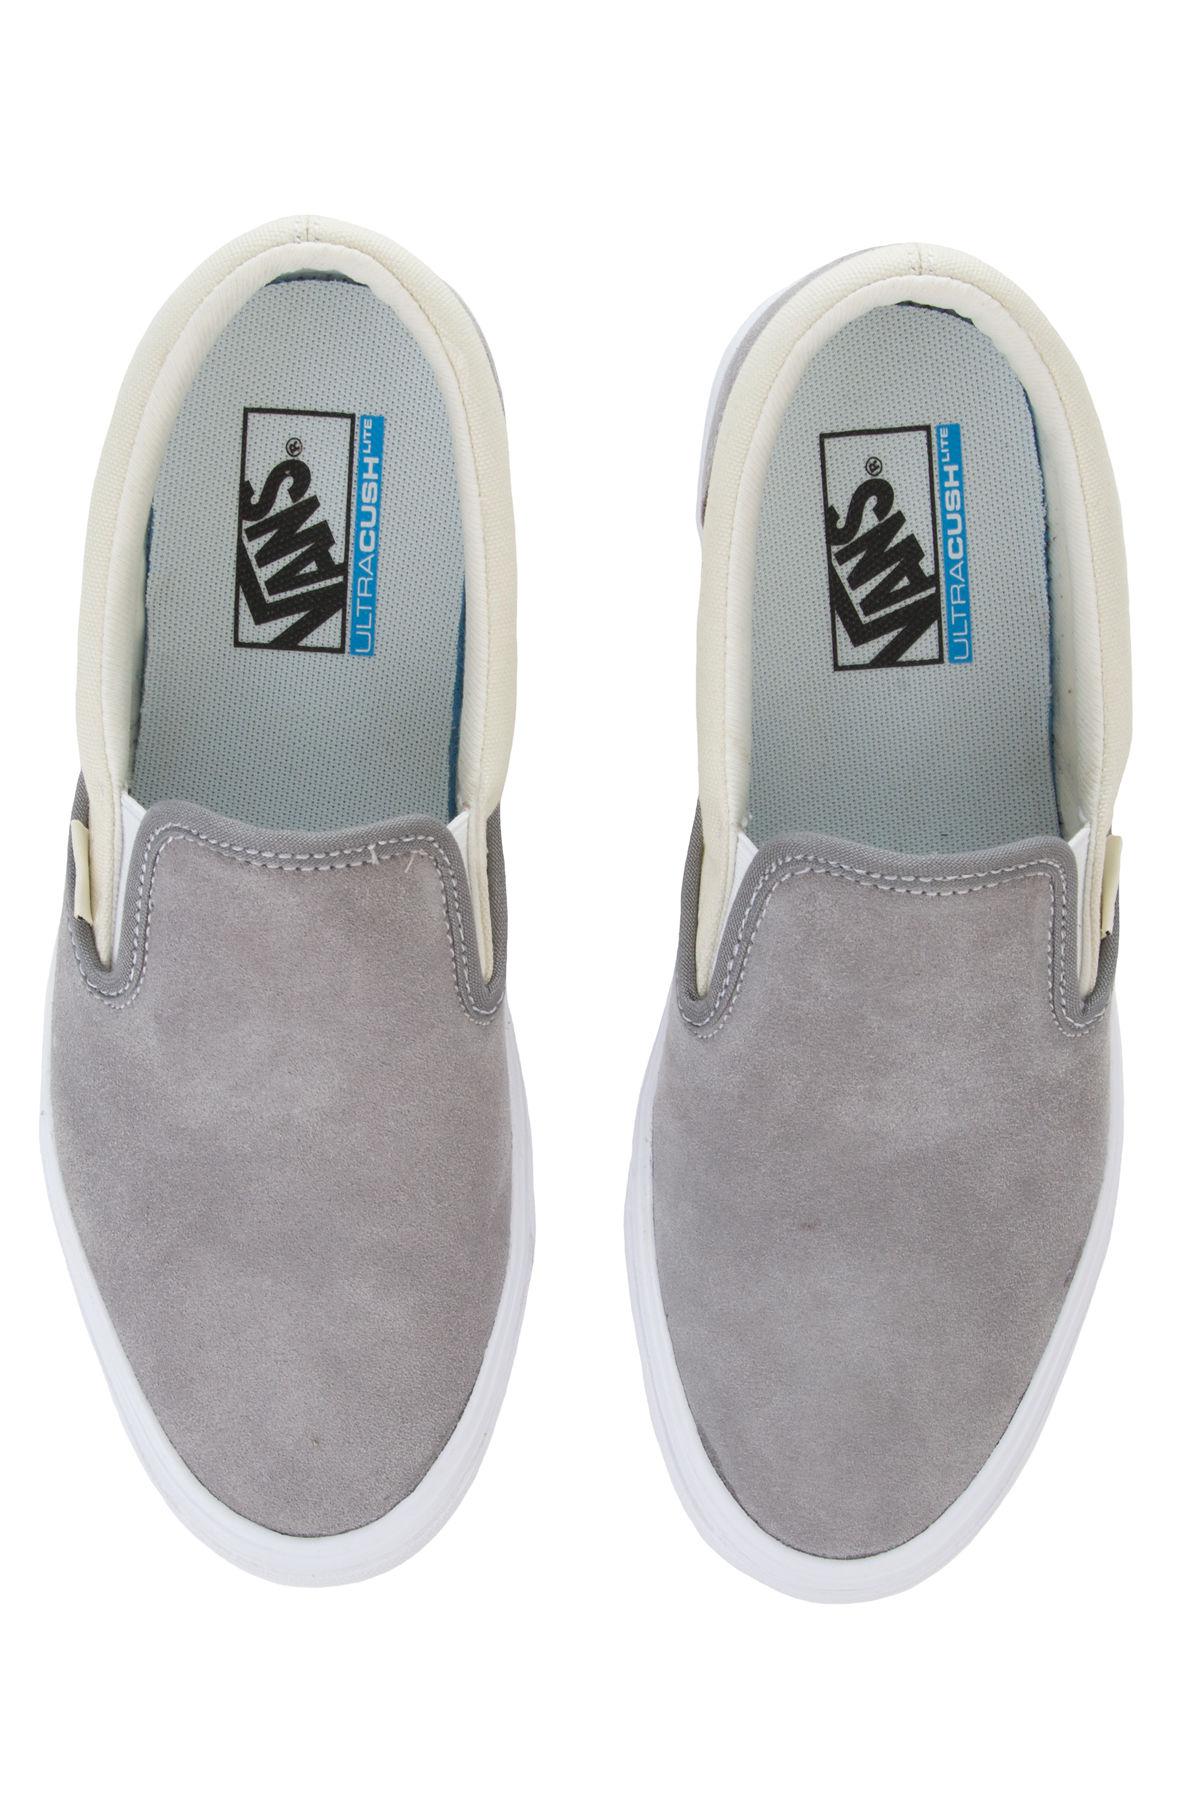 Vans Slip-on Lite ((two-tone) Frost Gray/marshmallow) Skate Shoes for Men -  Lyst